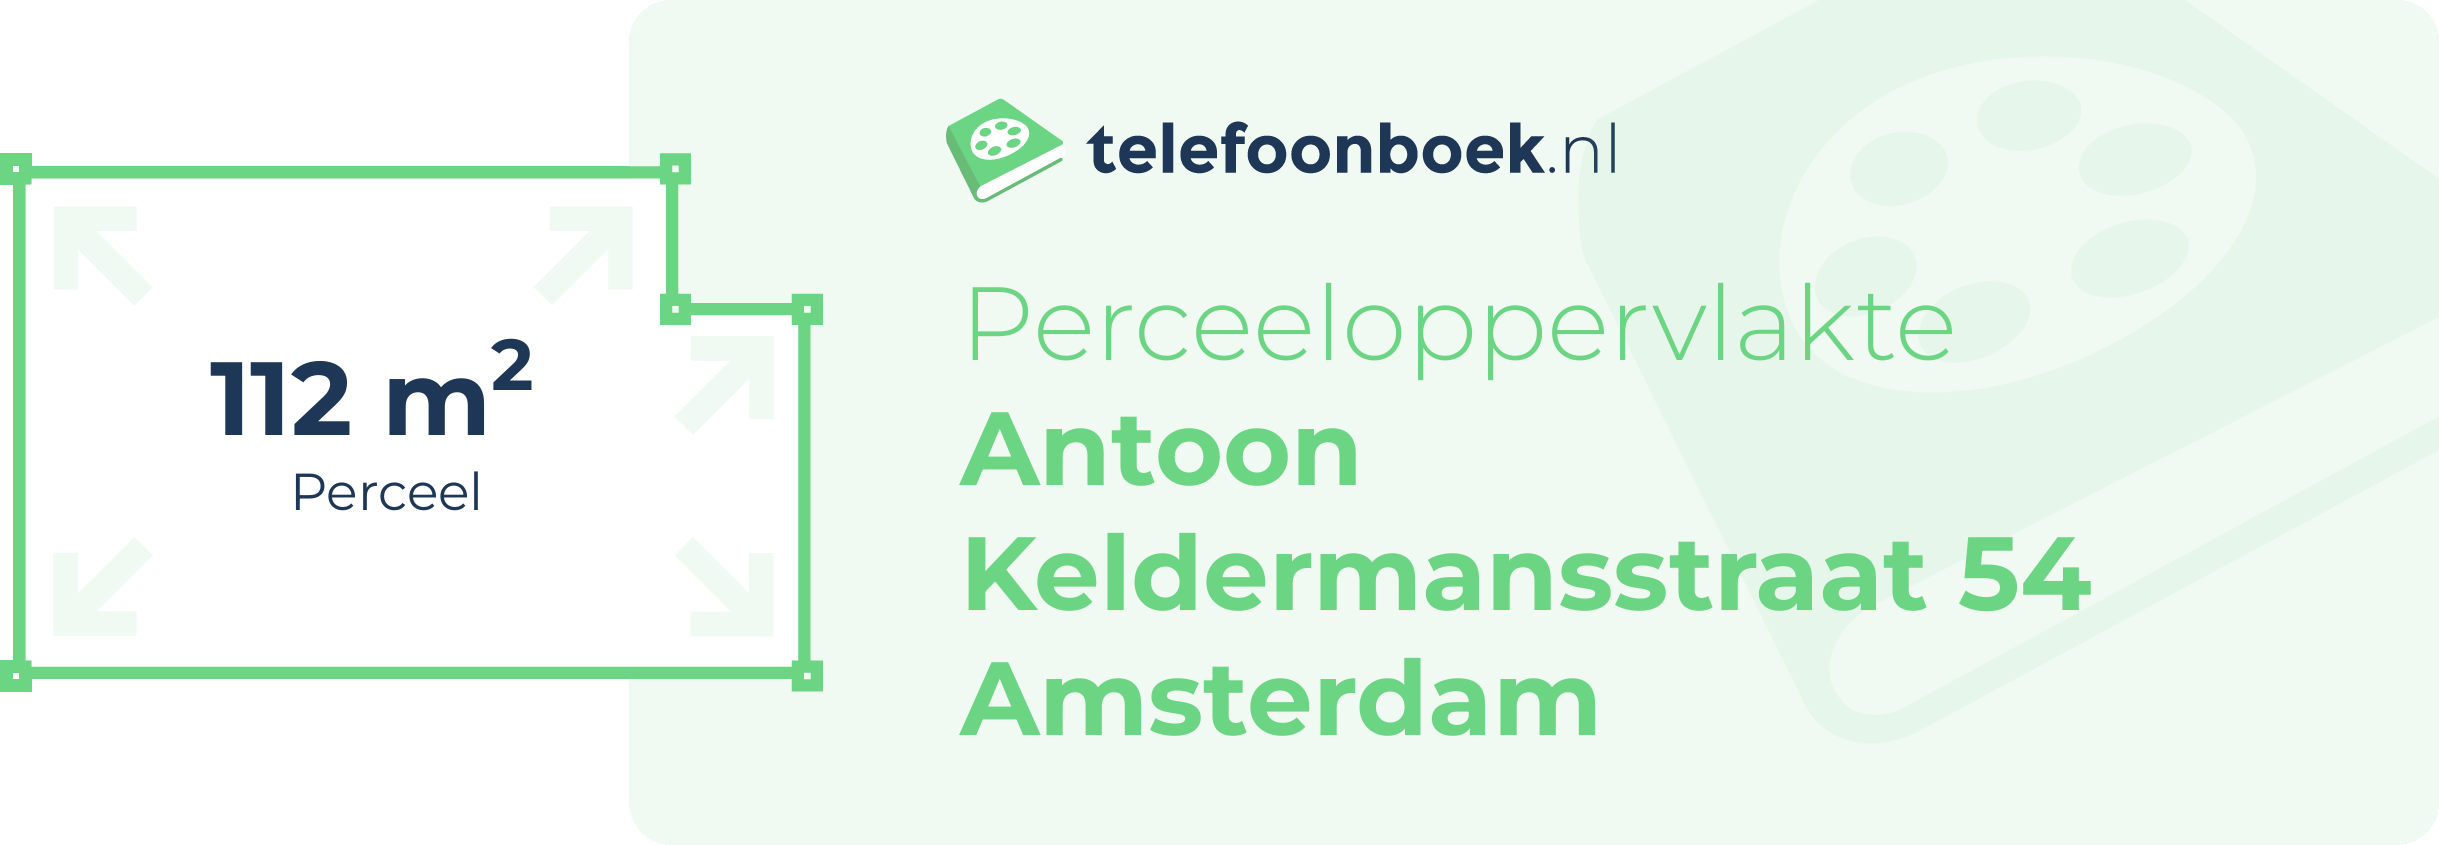 Perceeloppervlakte Antoon Keldermansstraat 54 Amsterdam